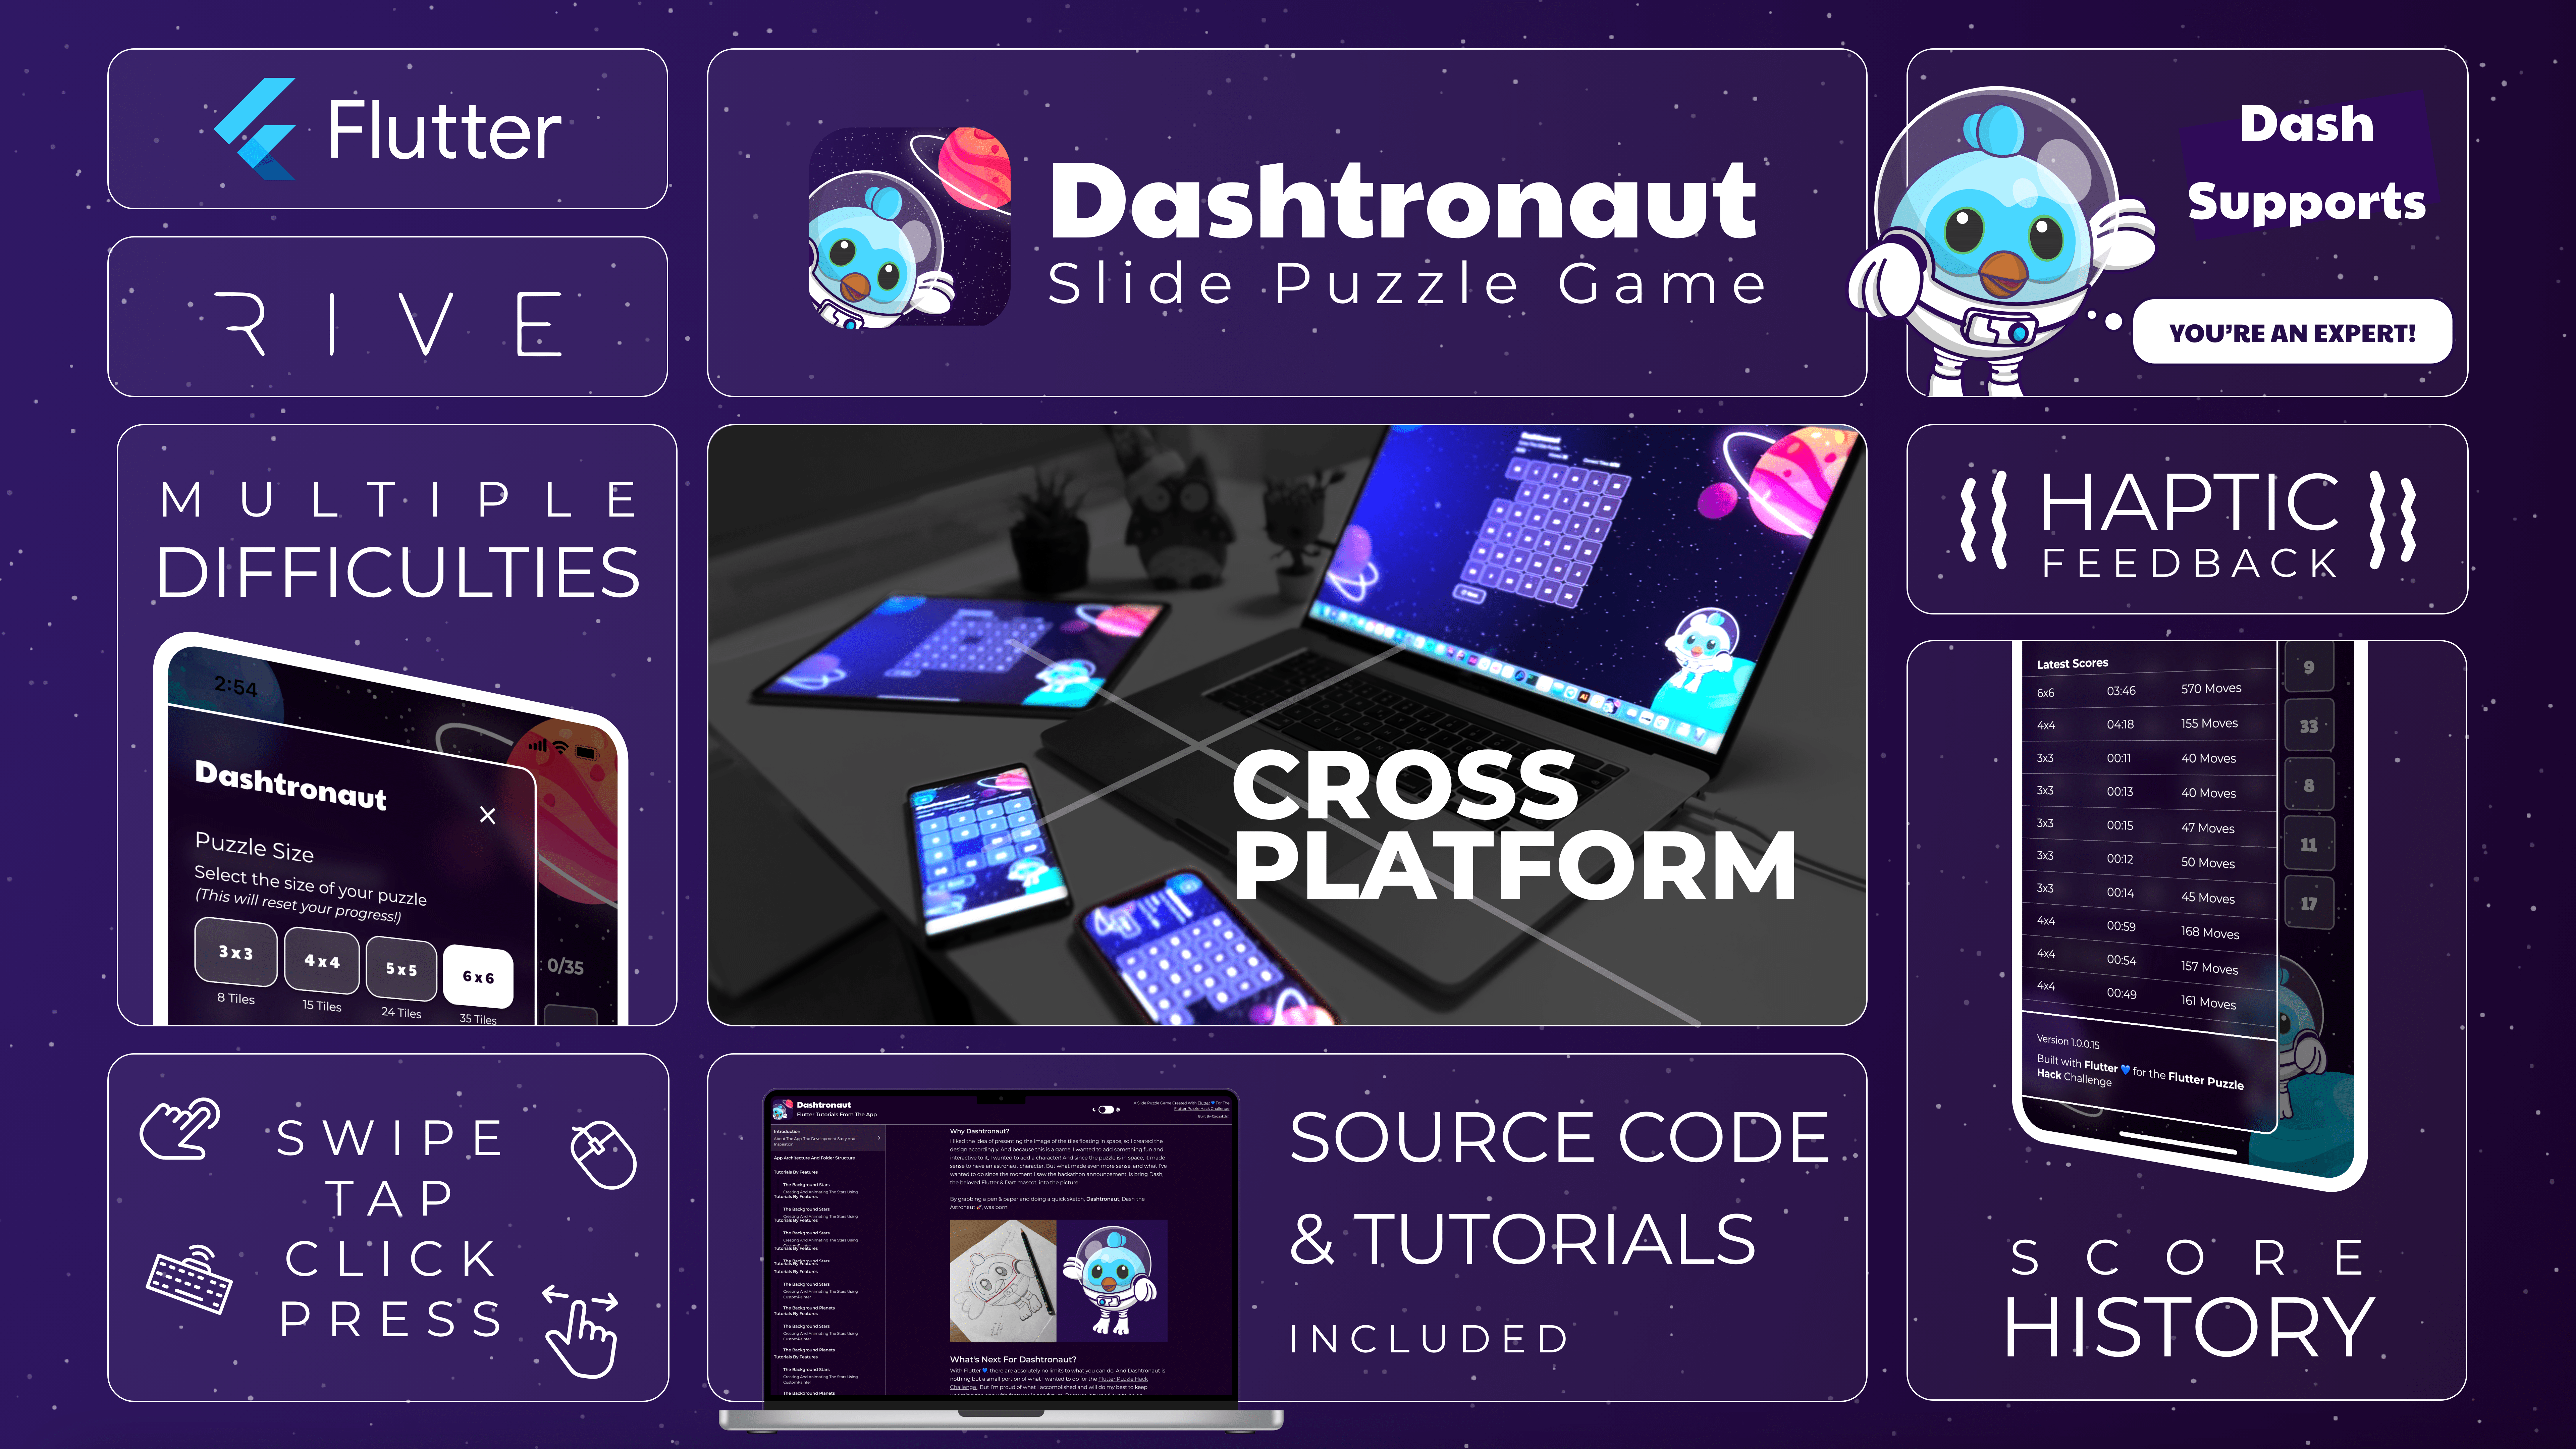 Dashtronaut Flutter Slide Puzzle App Features